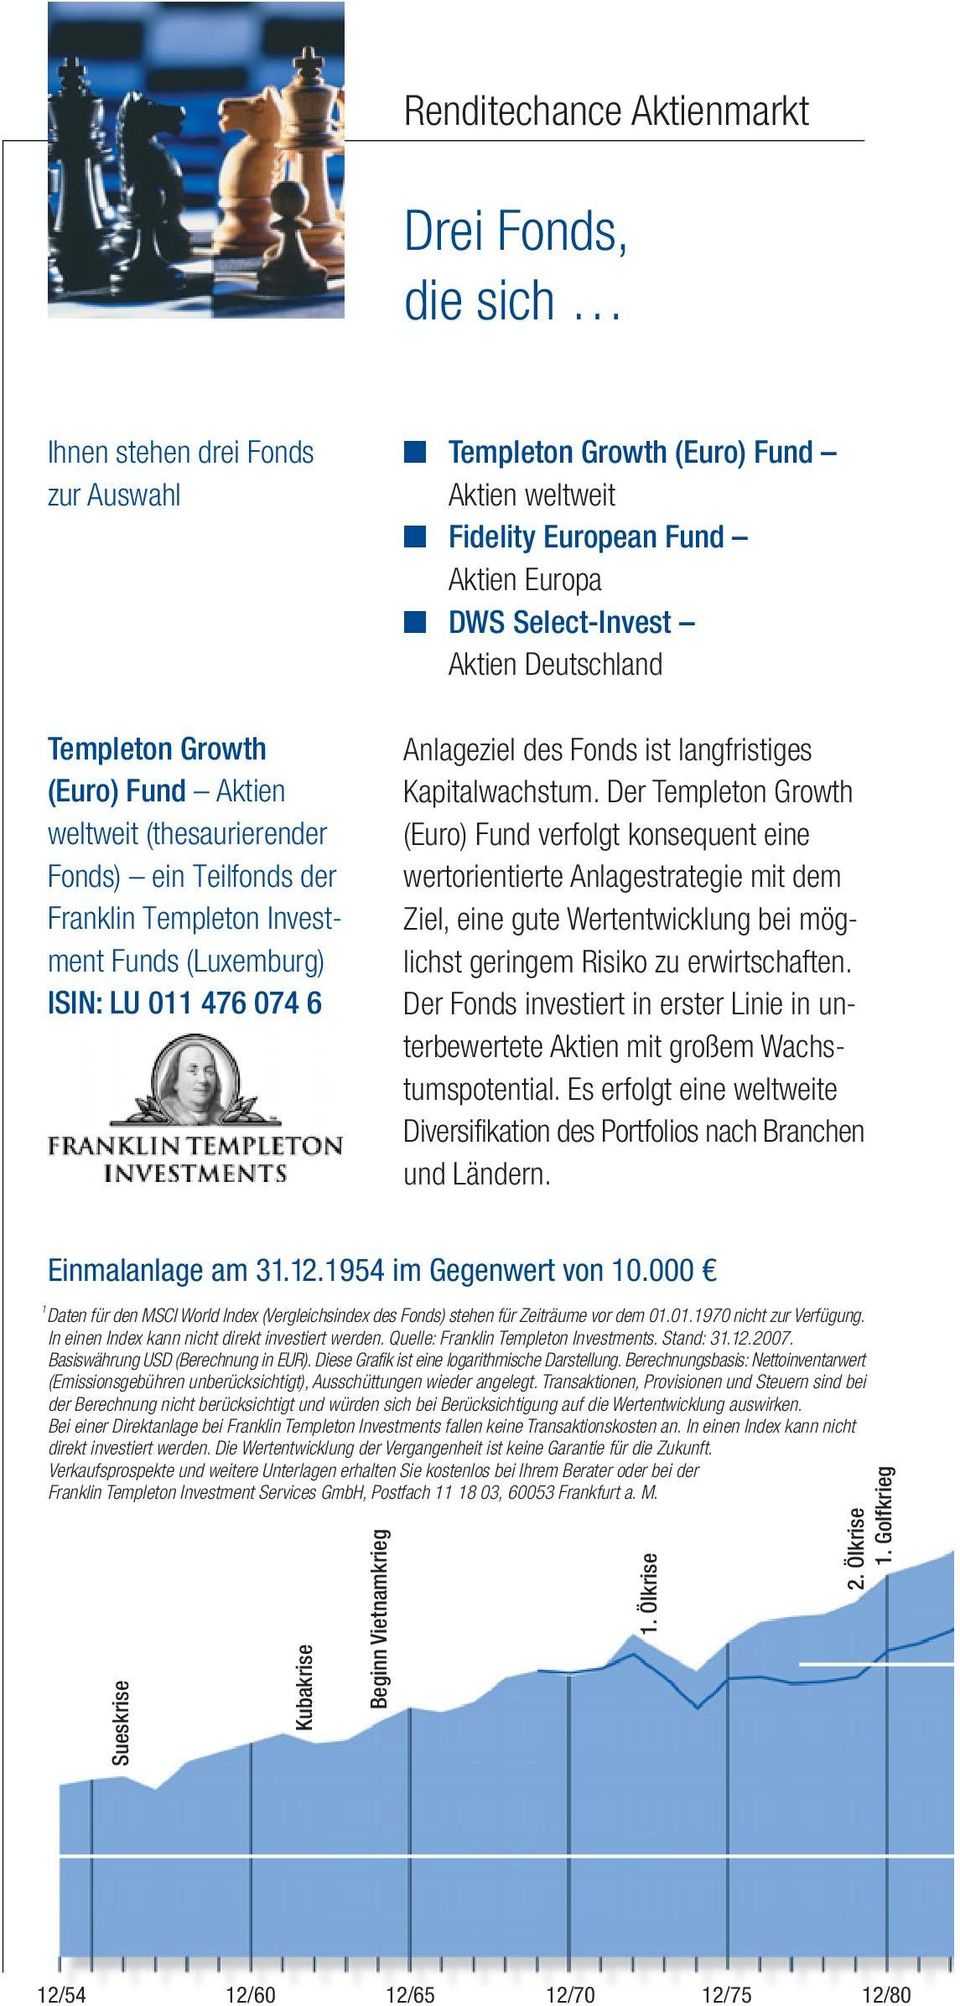 Kapitalwachstum. Der Templeton Growth (Euro) Fund verfolgt konsequent eine wertorientierte Anlagestrategie mit dem Ziel, eine gute Wertentwicklung bei möglichst geringem Risiko zu erwirtschaften.